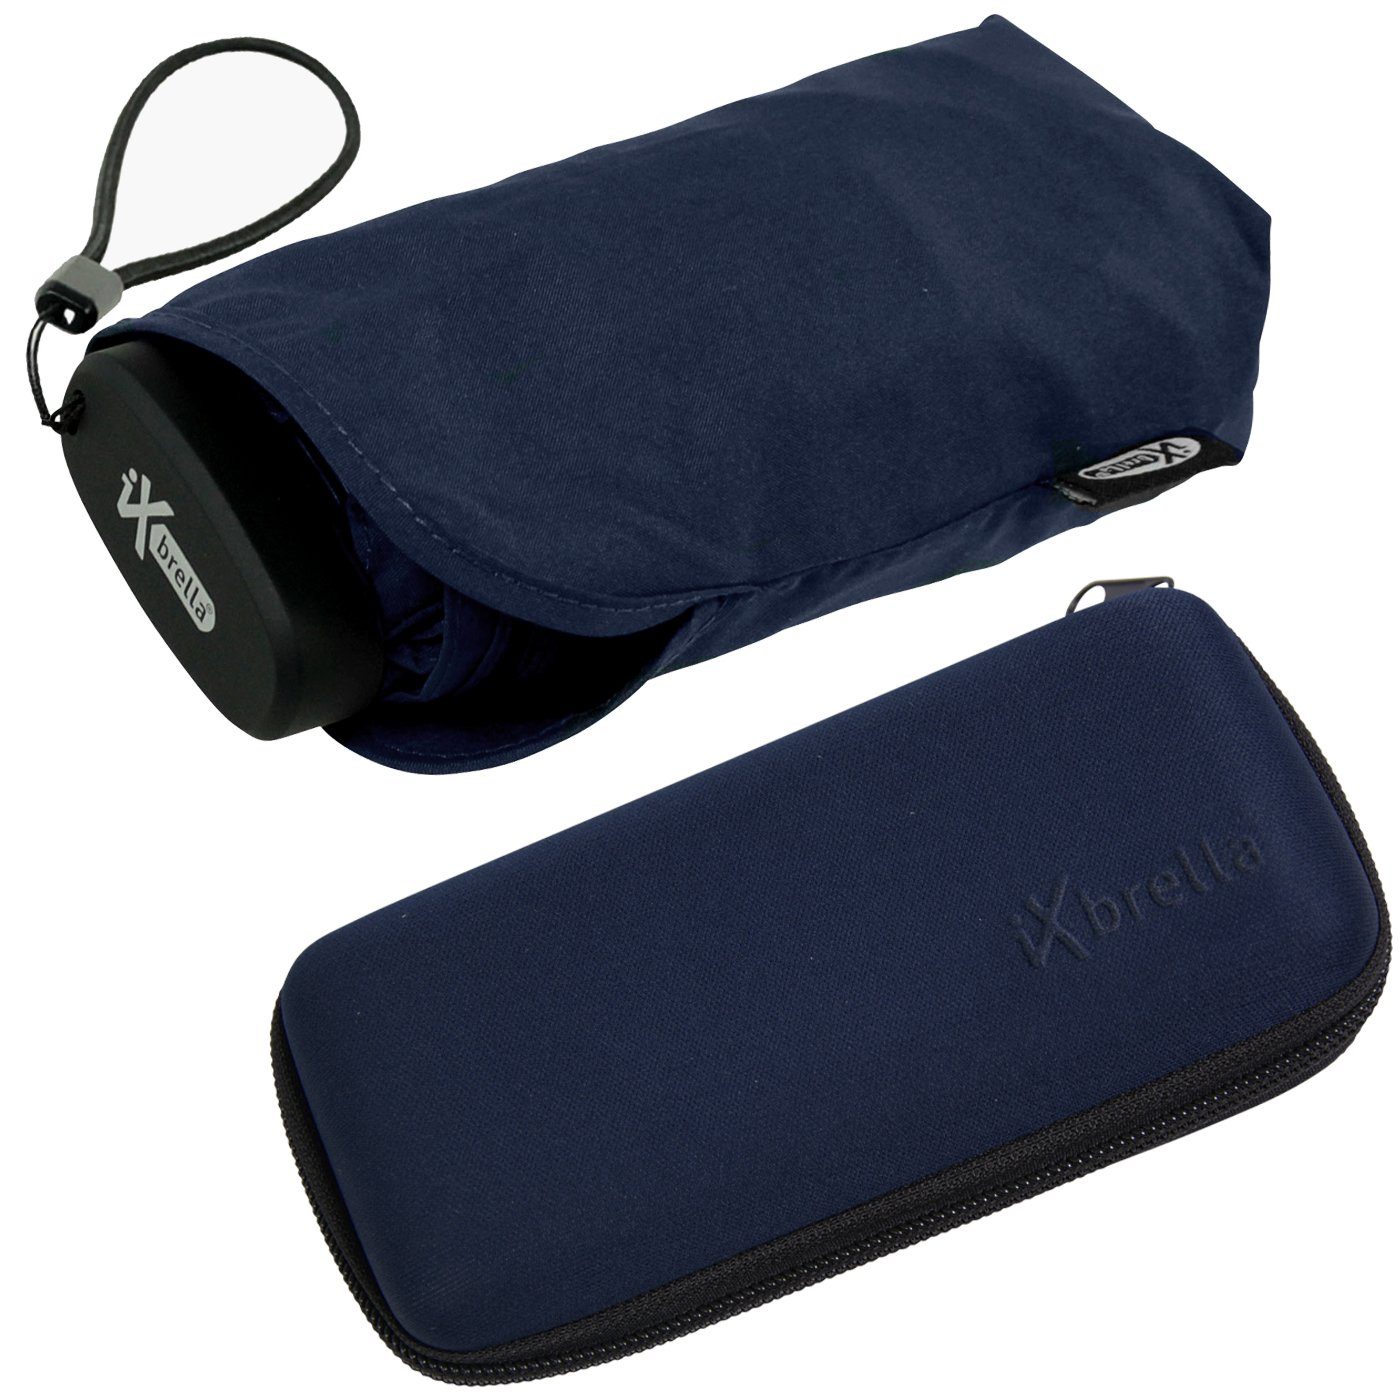 Schirm im Ultra blue dunkelblau cm Format, Taschenregenschirm winziger ultra-klein, Handy Mini mit - Softcase-Etui 15 iX-brella insignia